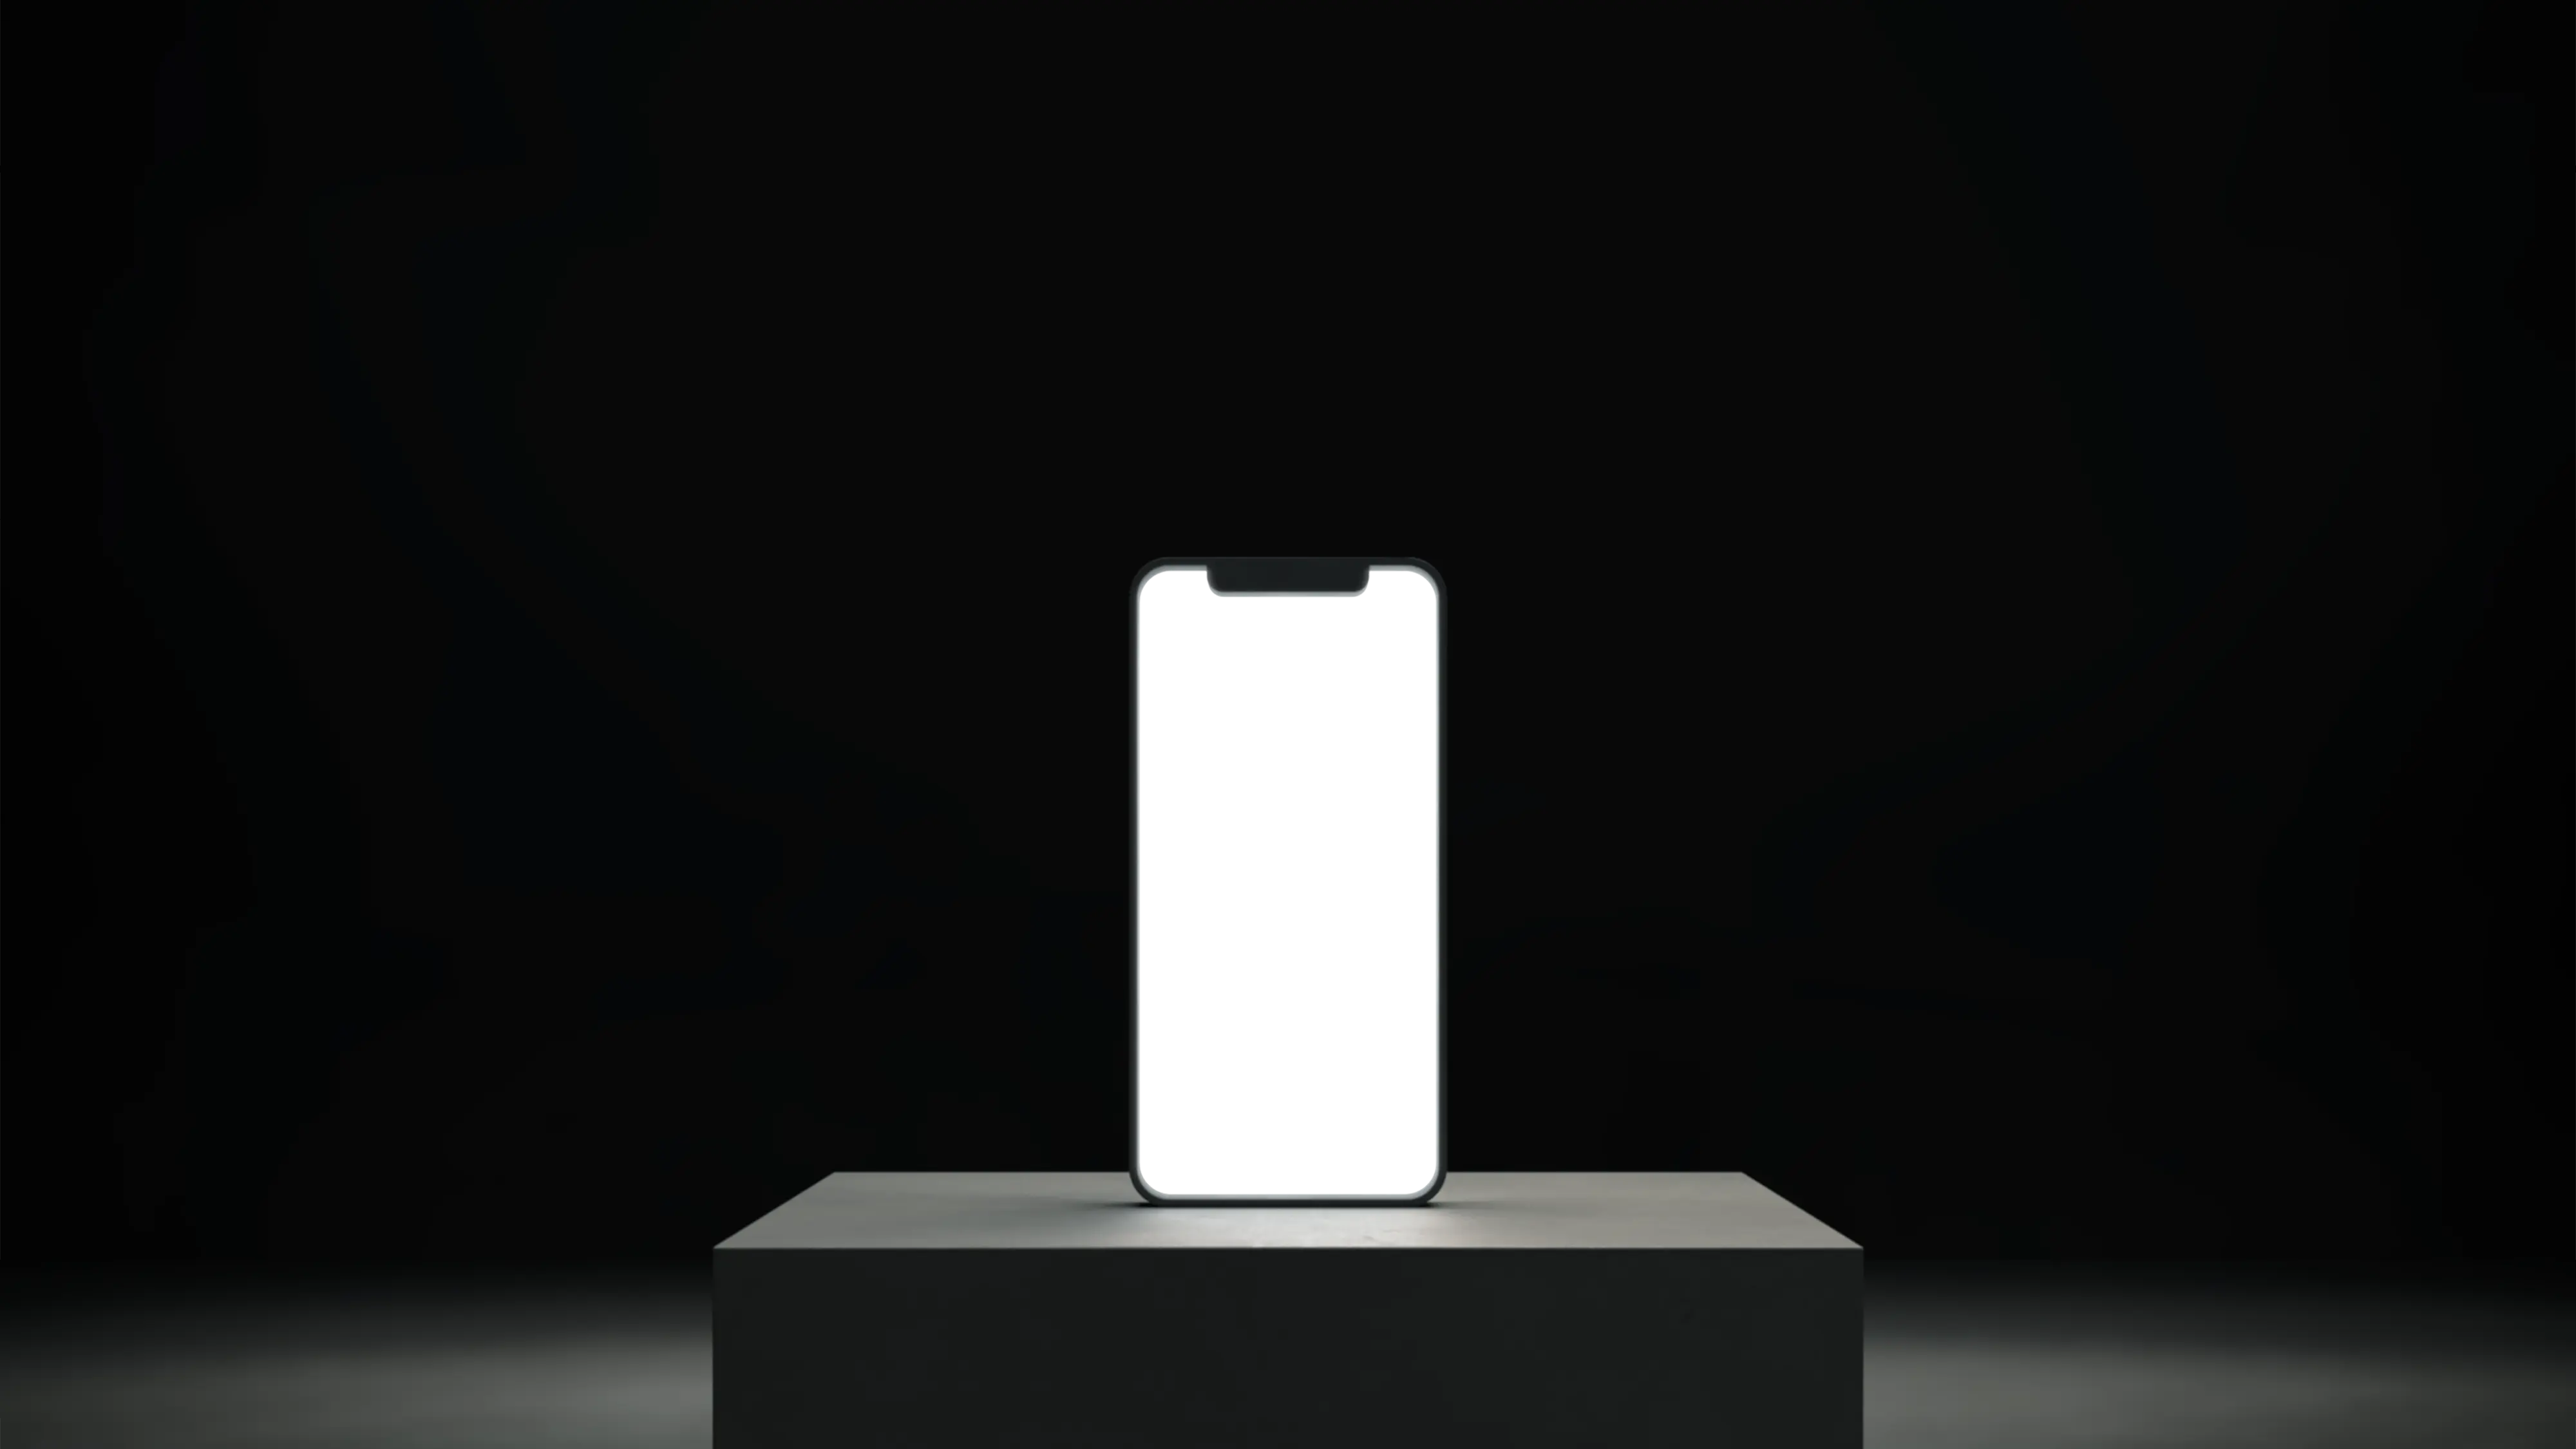 Smartphone auf Sockel mit leerem, weißem Bildschirm.